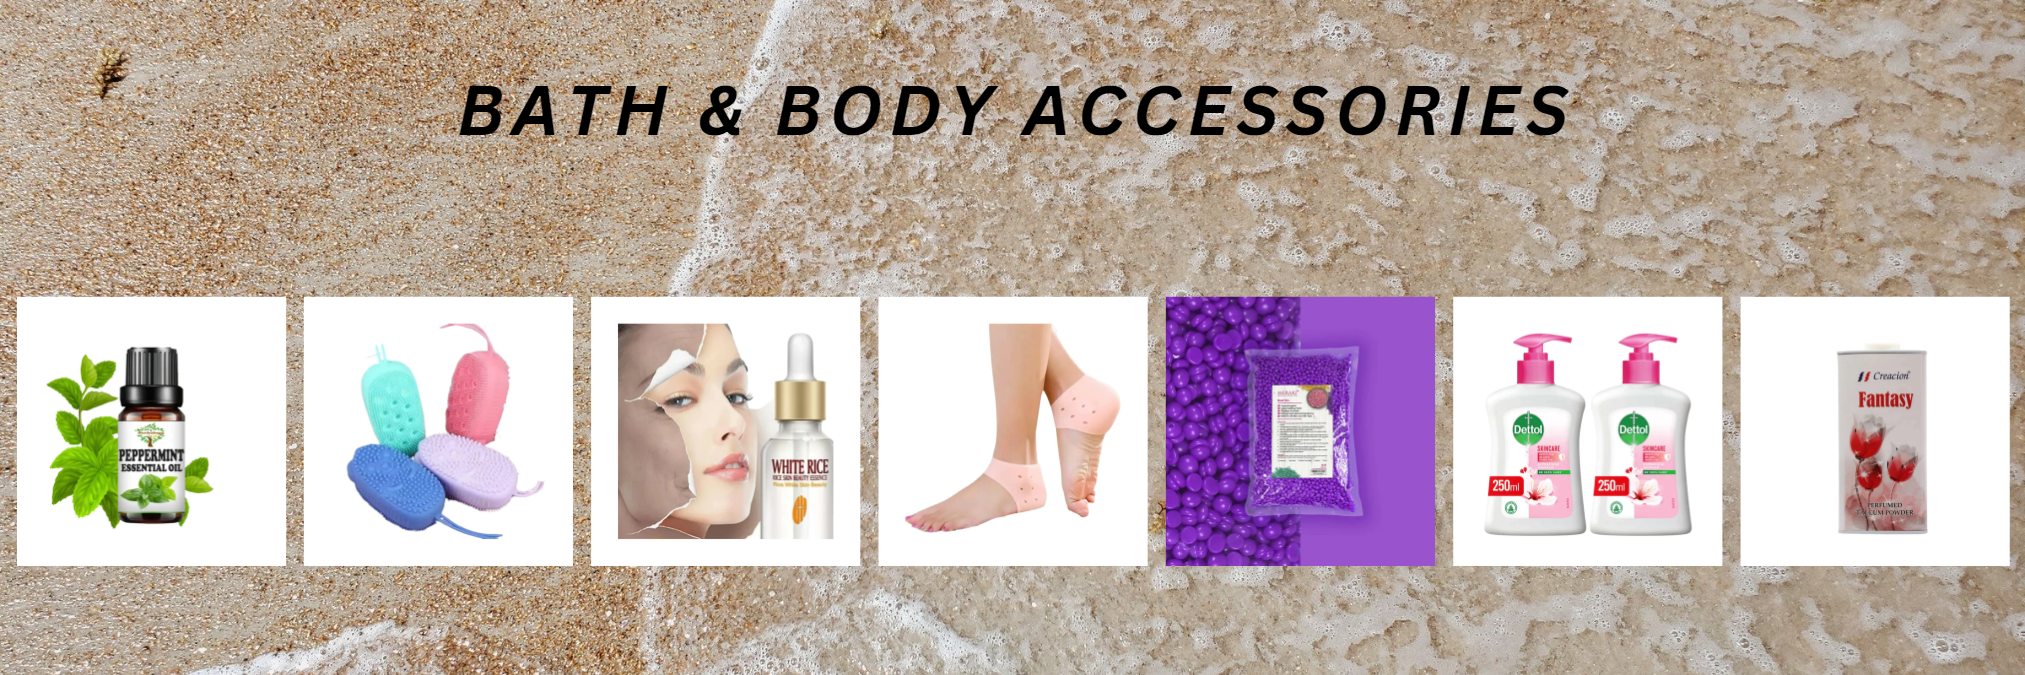 Bath & Body Accessories